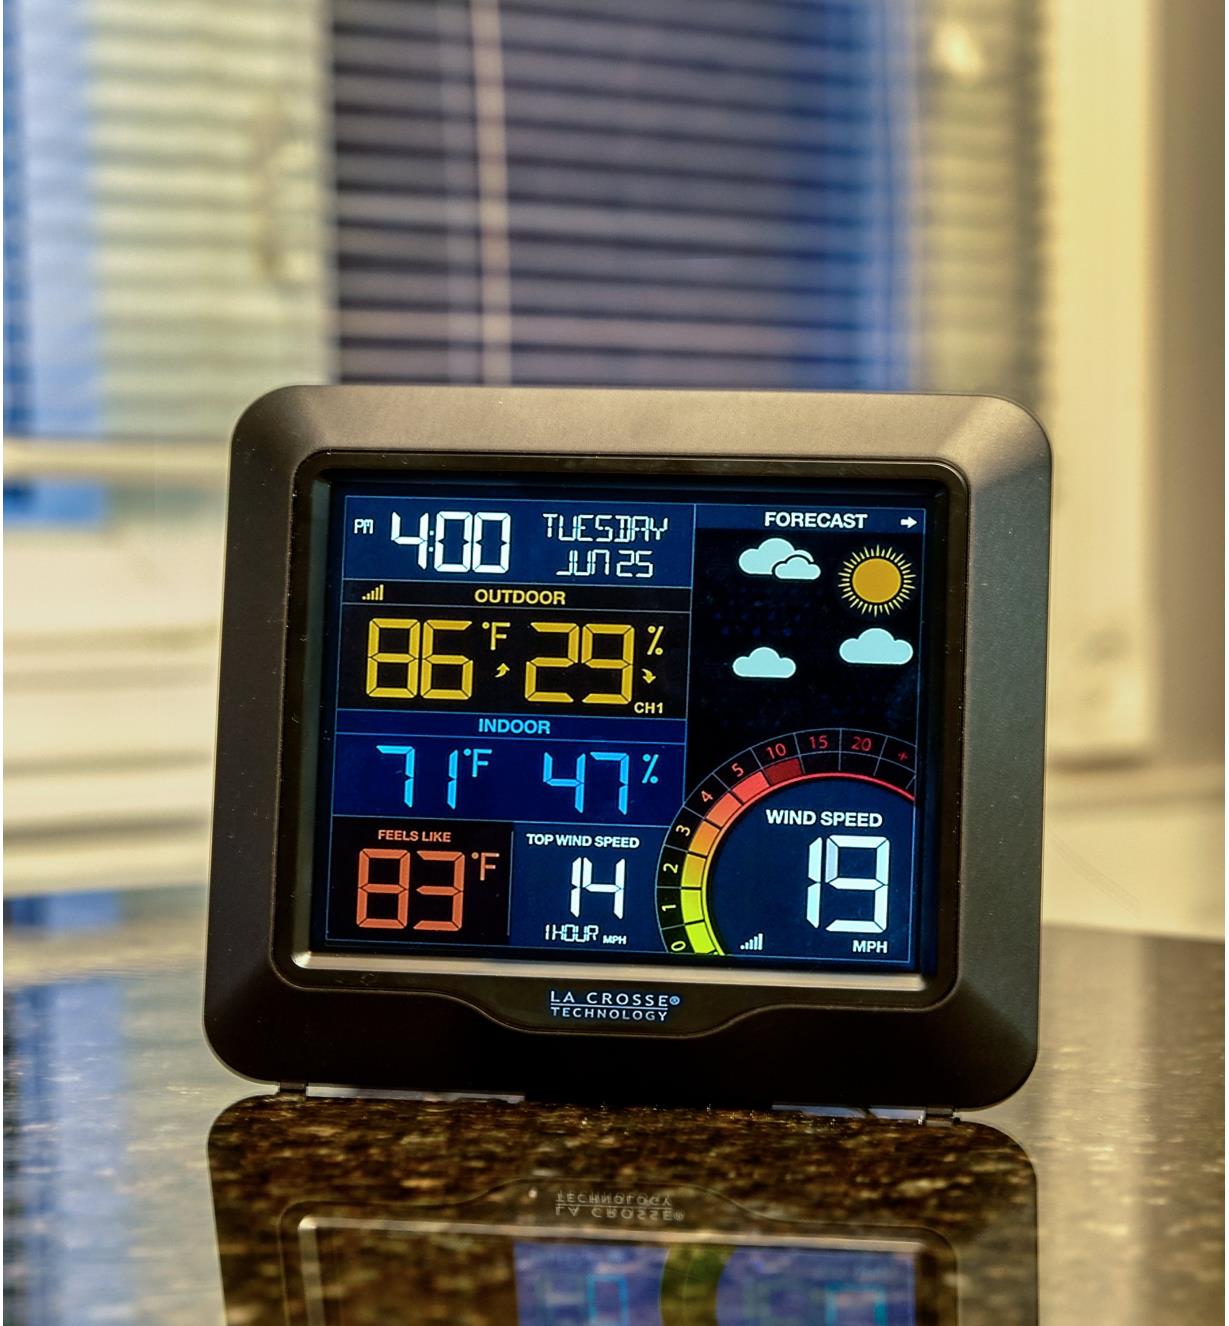 Écran ACL de la station météo sans fil affichant la date, l'heure, les symboles météo, la température en degré Fahrenheit, le taux d'humidité et la vitesse du vent en milles à l'heure